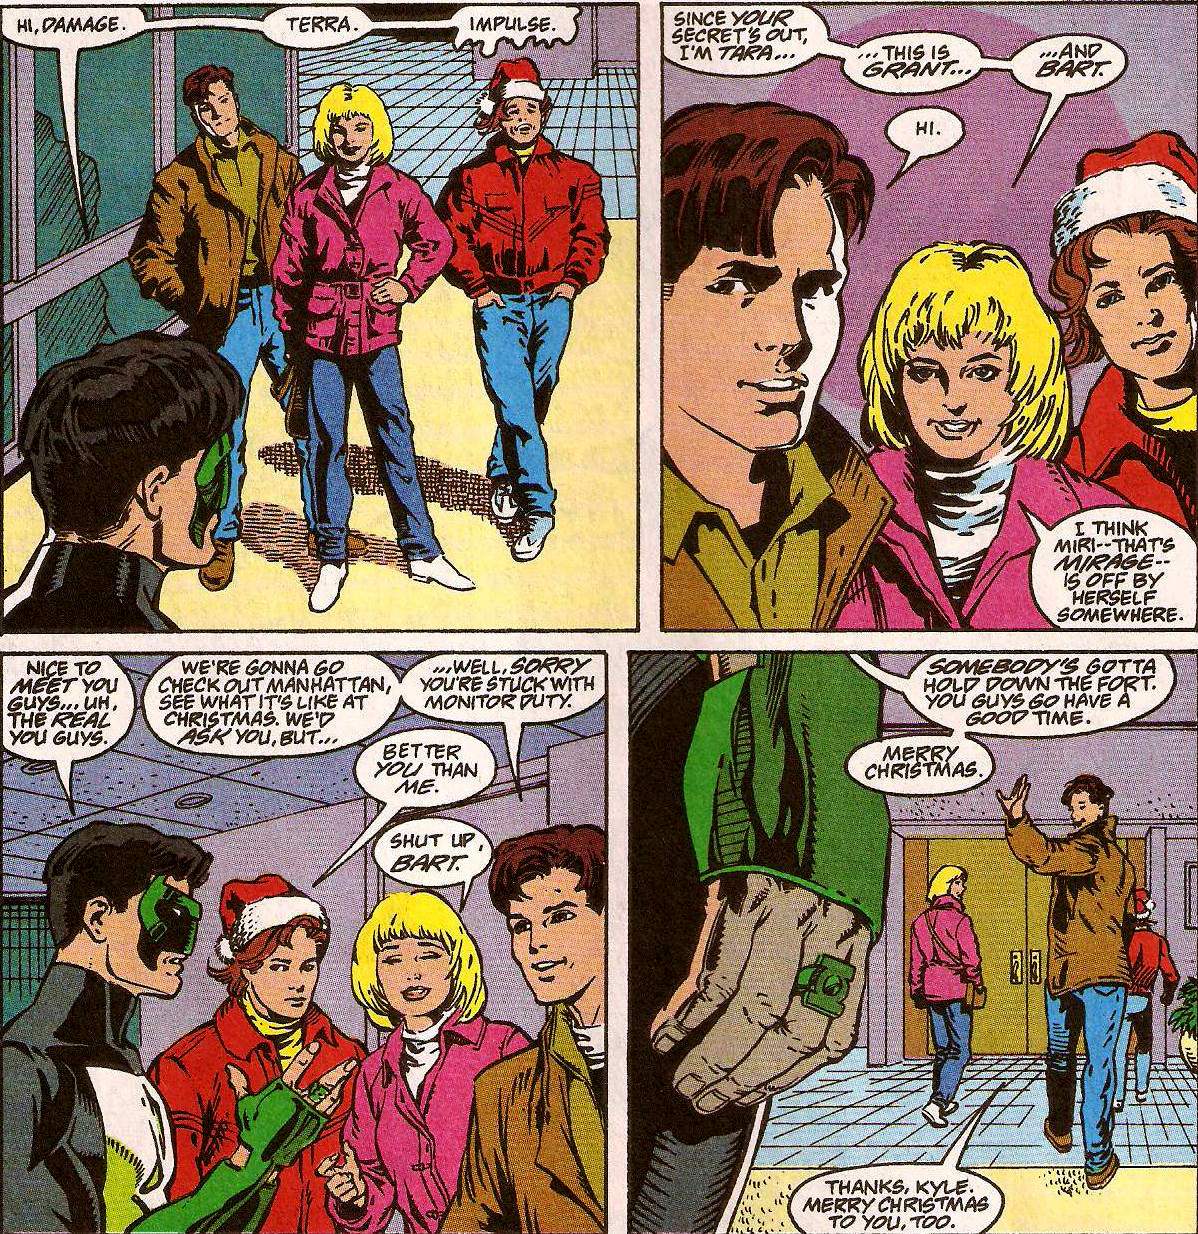 From Green Lantern (Vol. 3) #59 (1995)